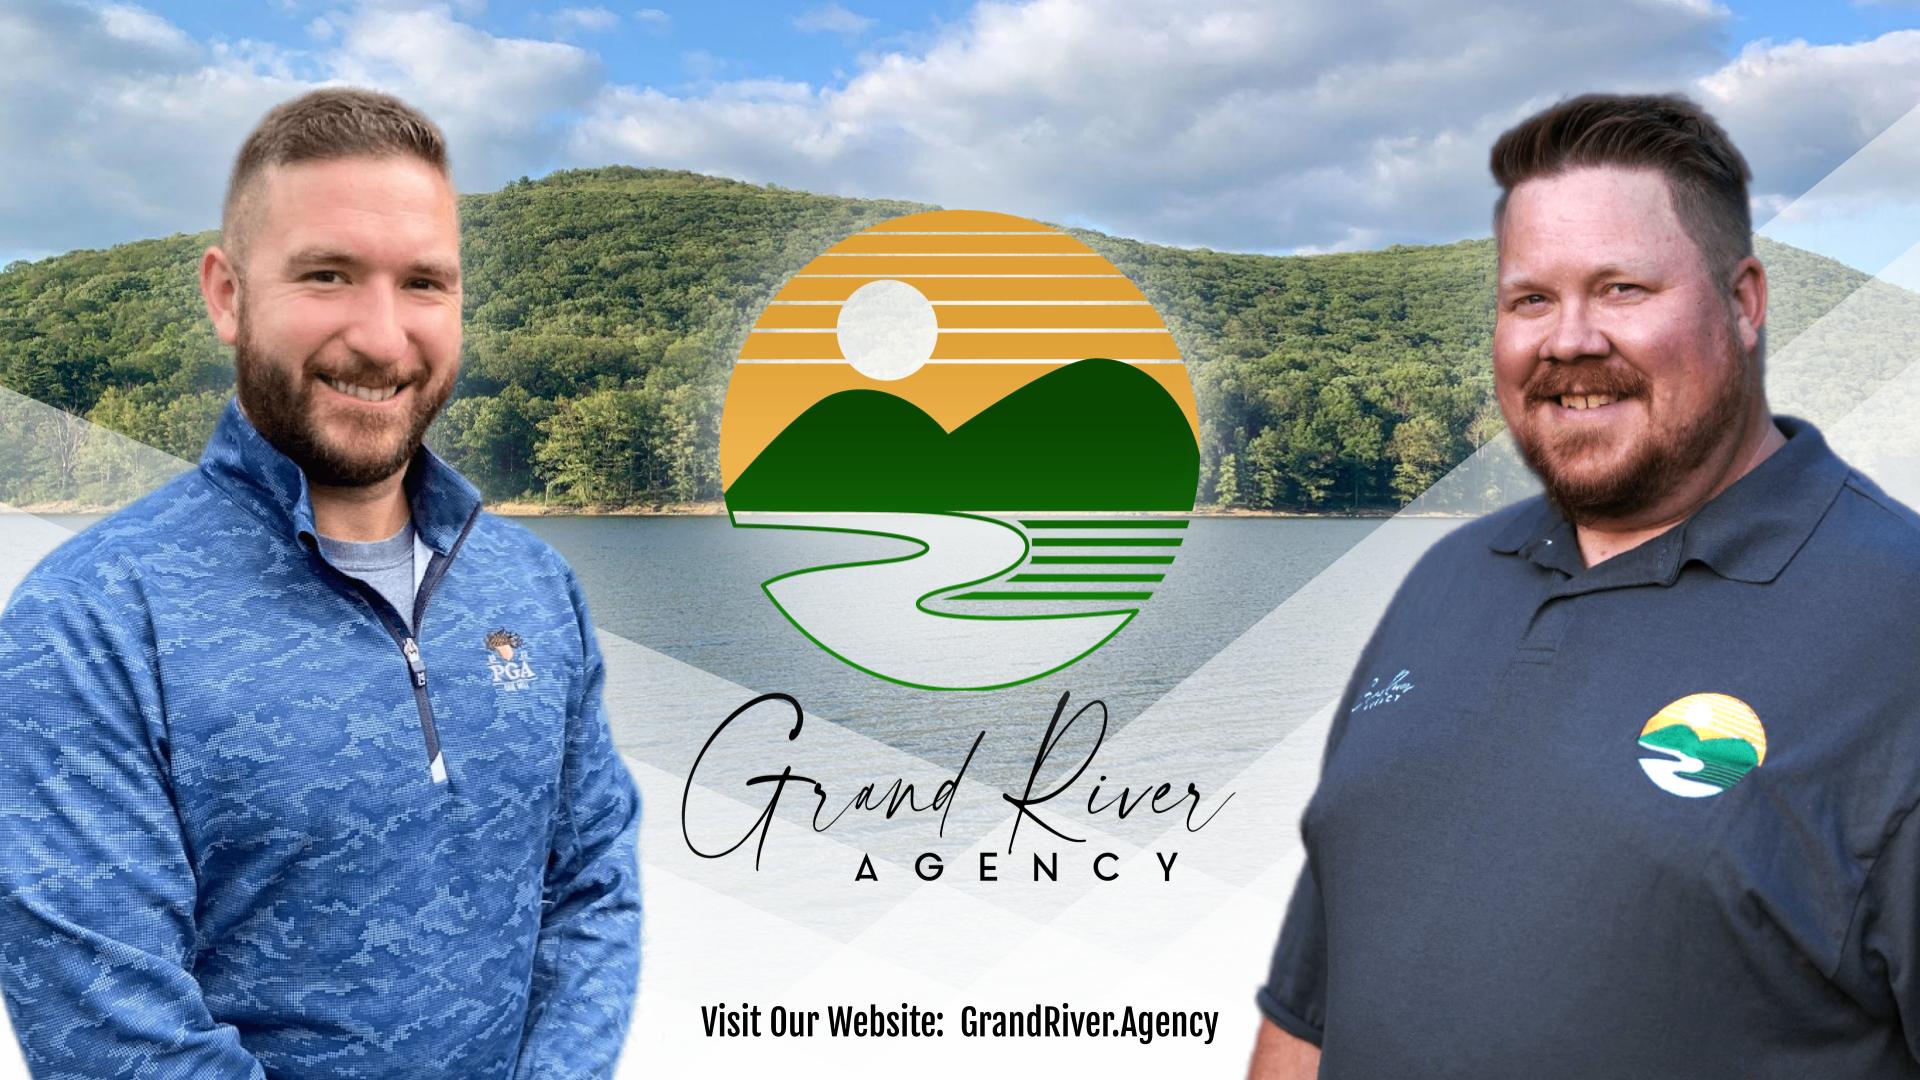 Grand River Agency is NANOE's preferred nonprofit social media marketing vendor